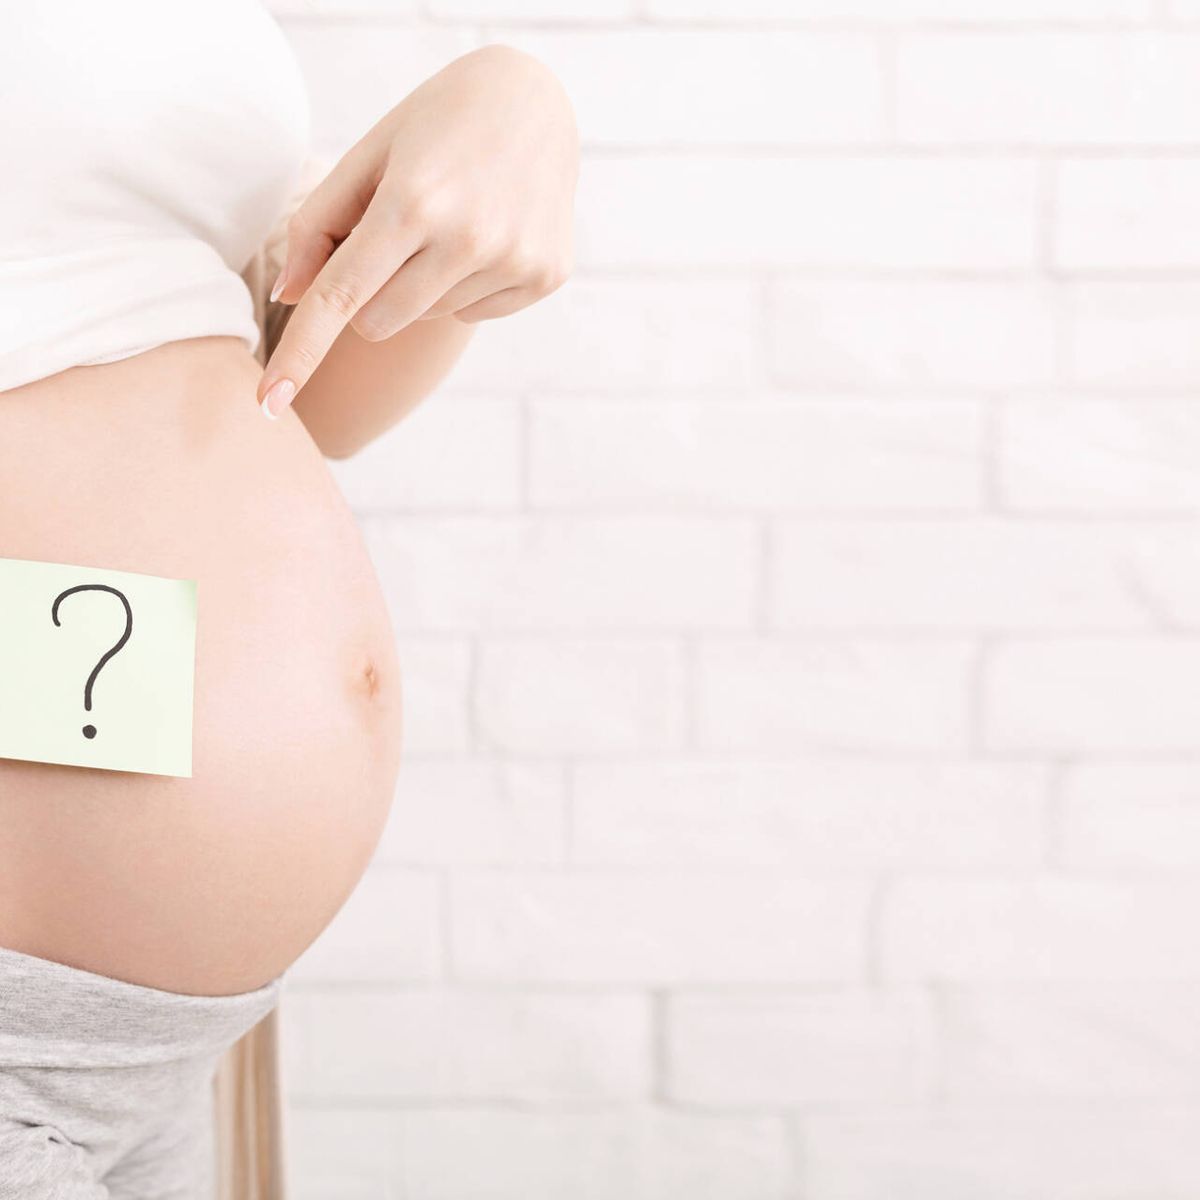 Erradicar estafa Sucio Cuándo aparecen los primeros síntomas de embarazo? De la primera semana al  primer mes